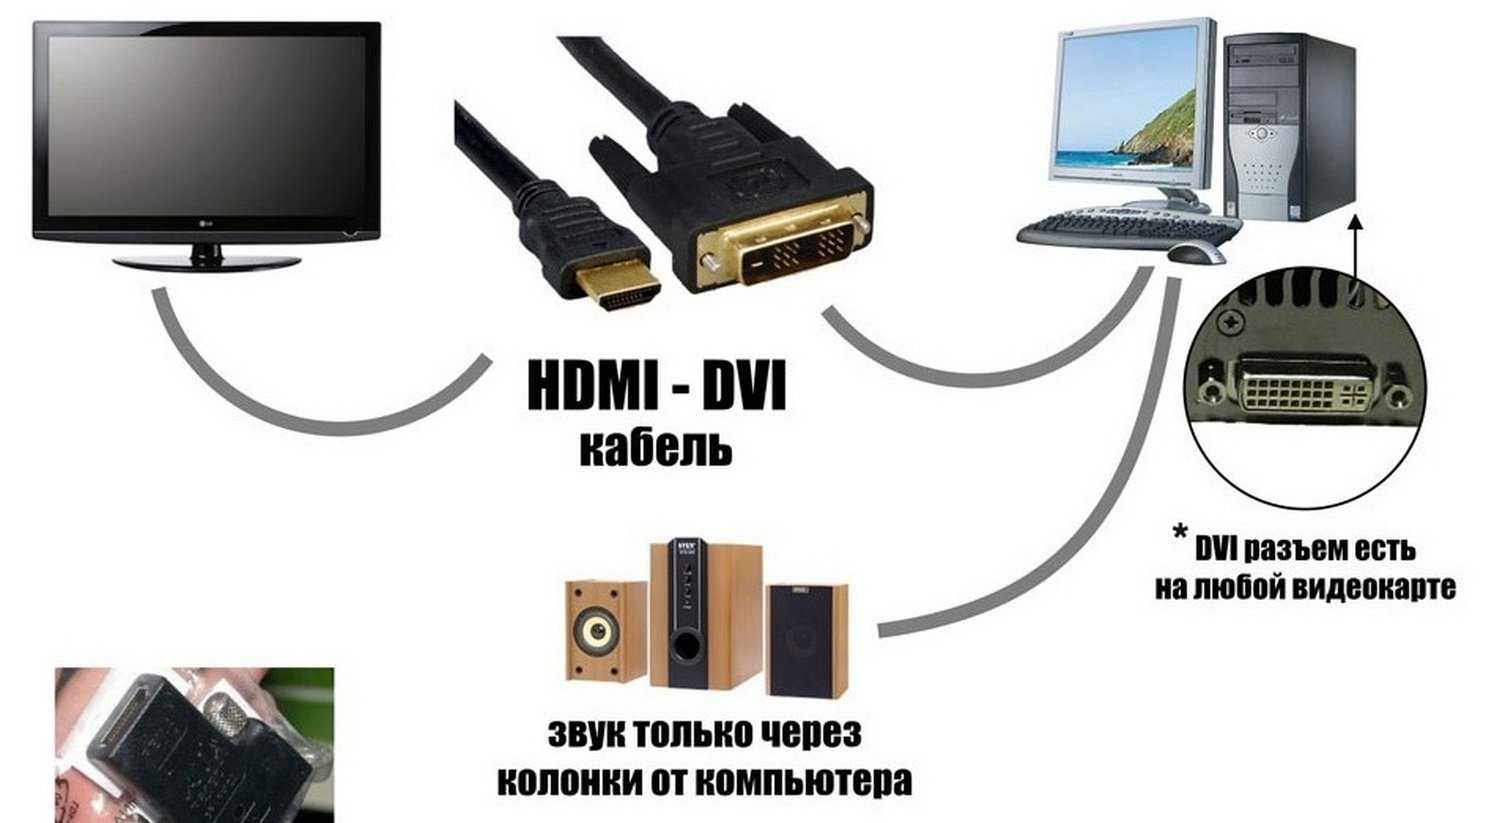 Инструкция для тех, у кого телевизор пишет нет сигнала HDMI при подключении к компьютеру или игровой приставке Что делать если пропадает сигнал HDMI кабеля